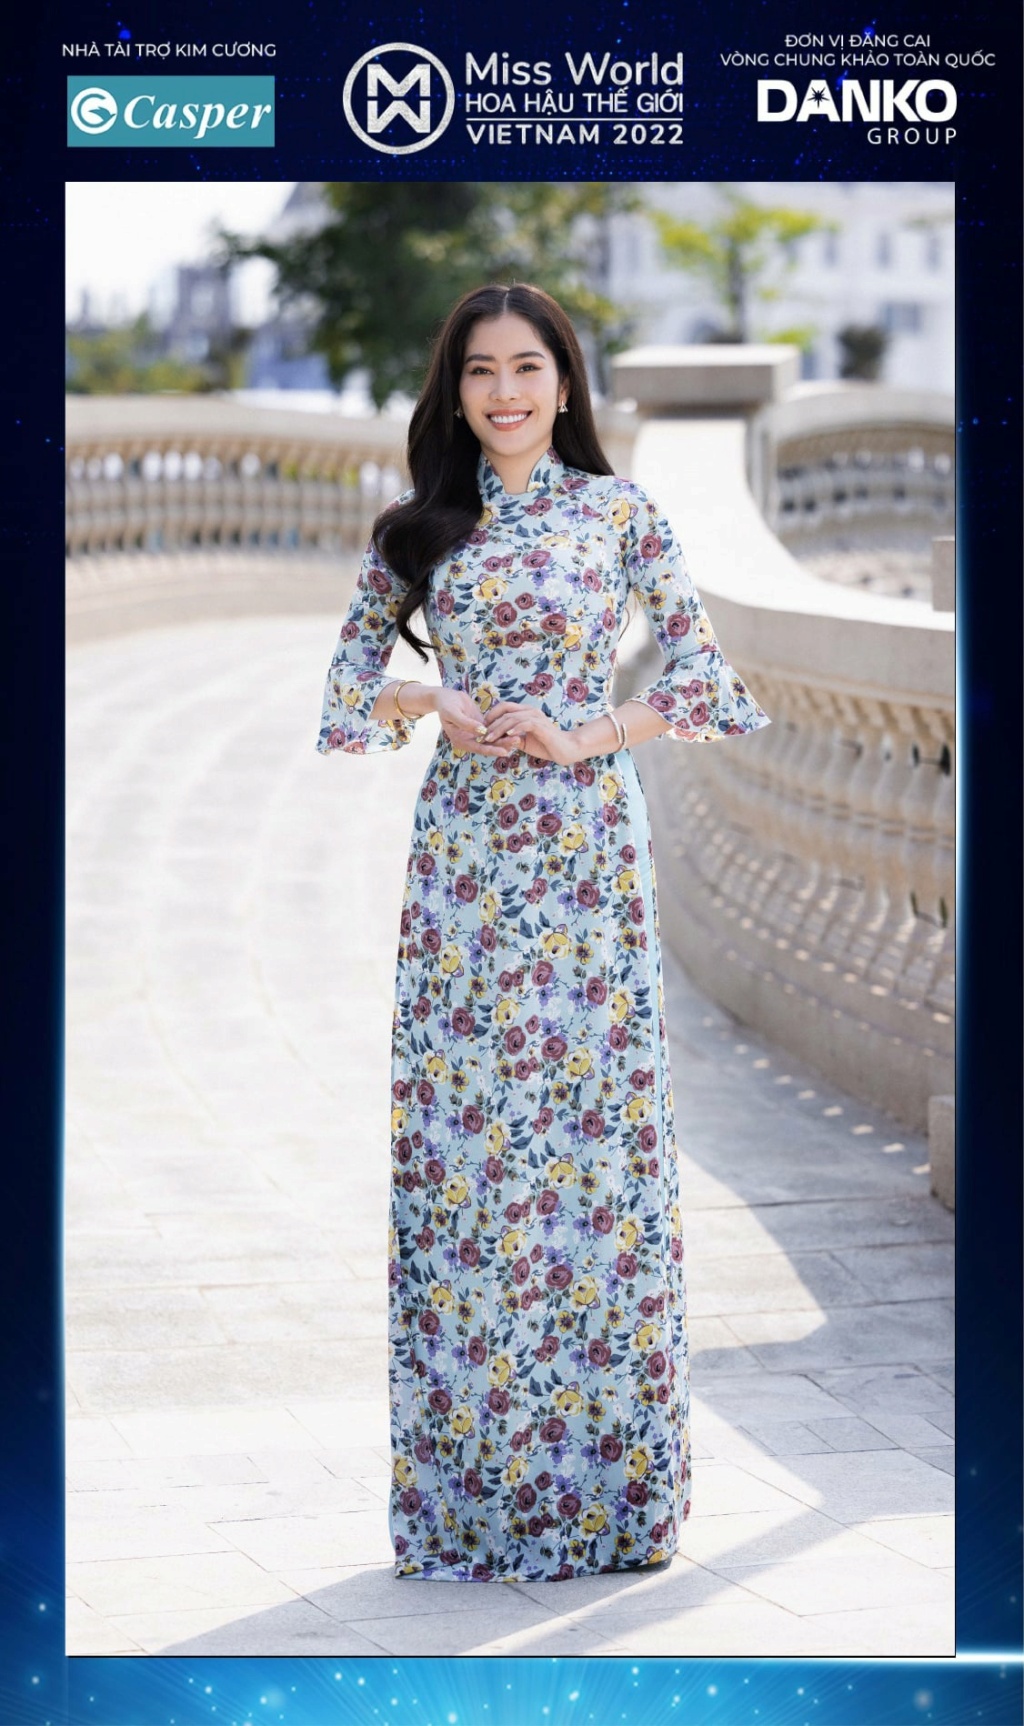 Miss World Vietnam 2022 27911110